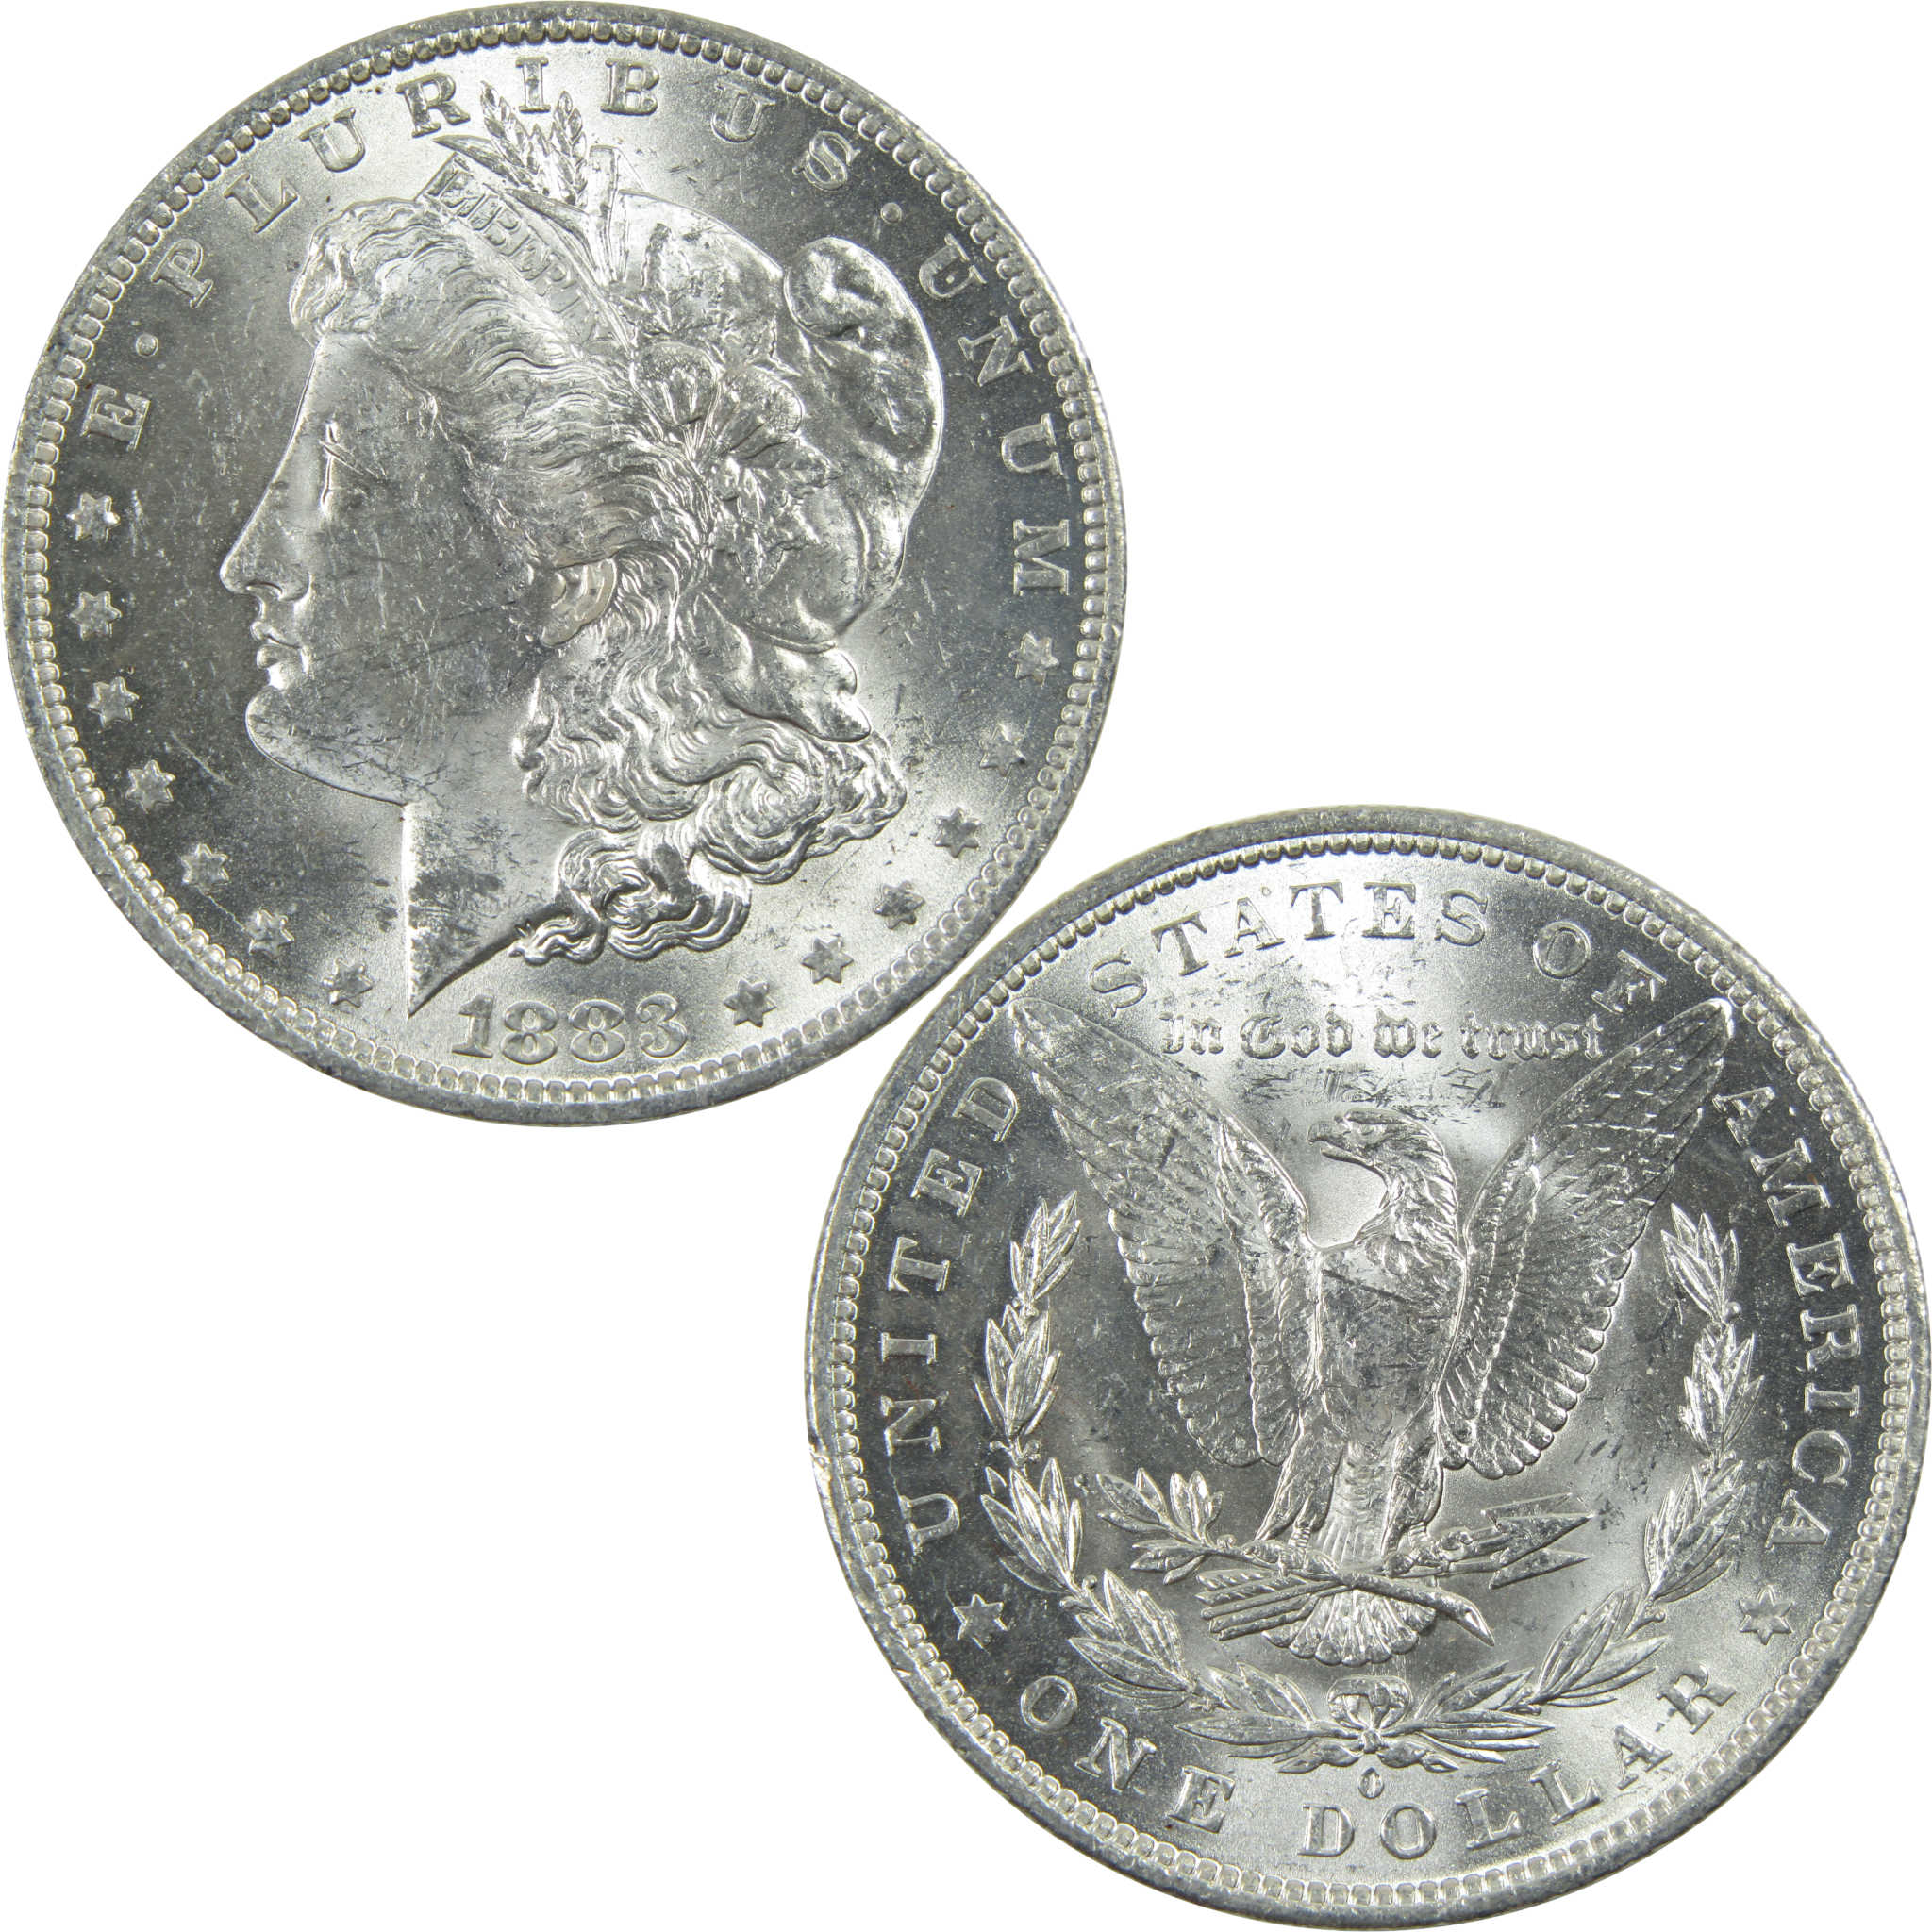 1883 O Morgan Dollar Uncirculated Silver $1 Coin SKU:I13423 - Morgan coin - Morgan silver dollar - Morgan silver dollar for sale - Profile Coins &amp; Collectibles